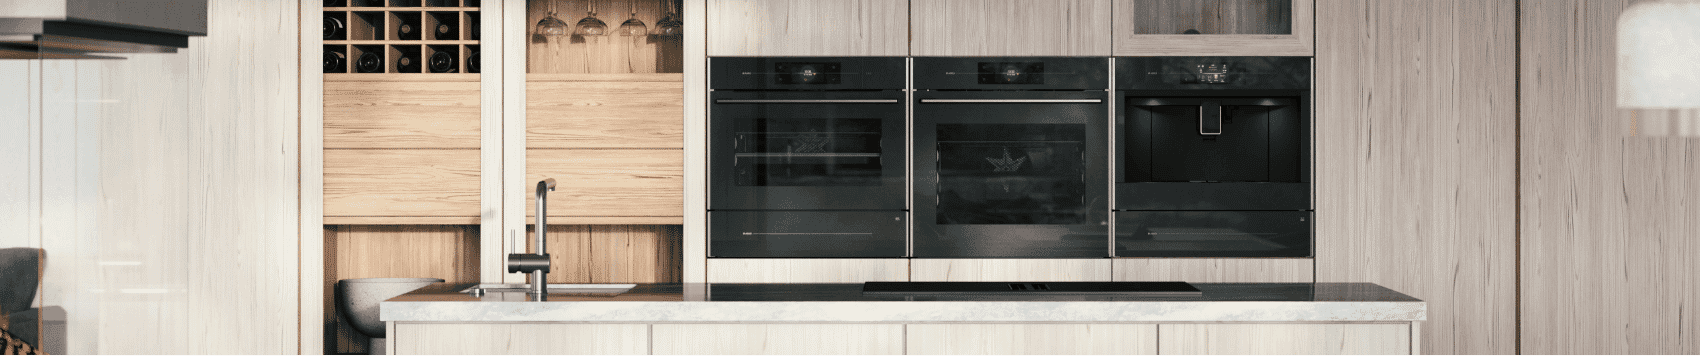 Asko ovens in modern kitchen